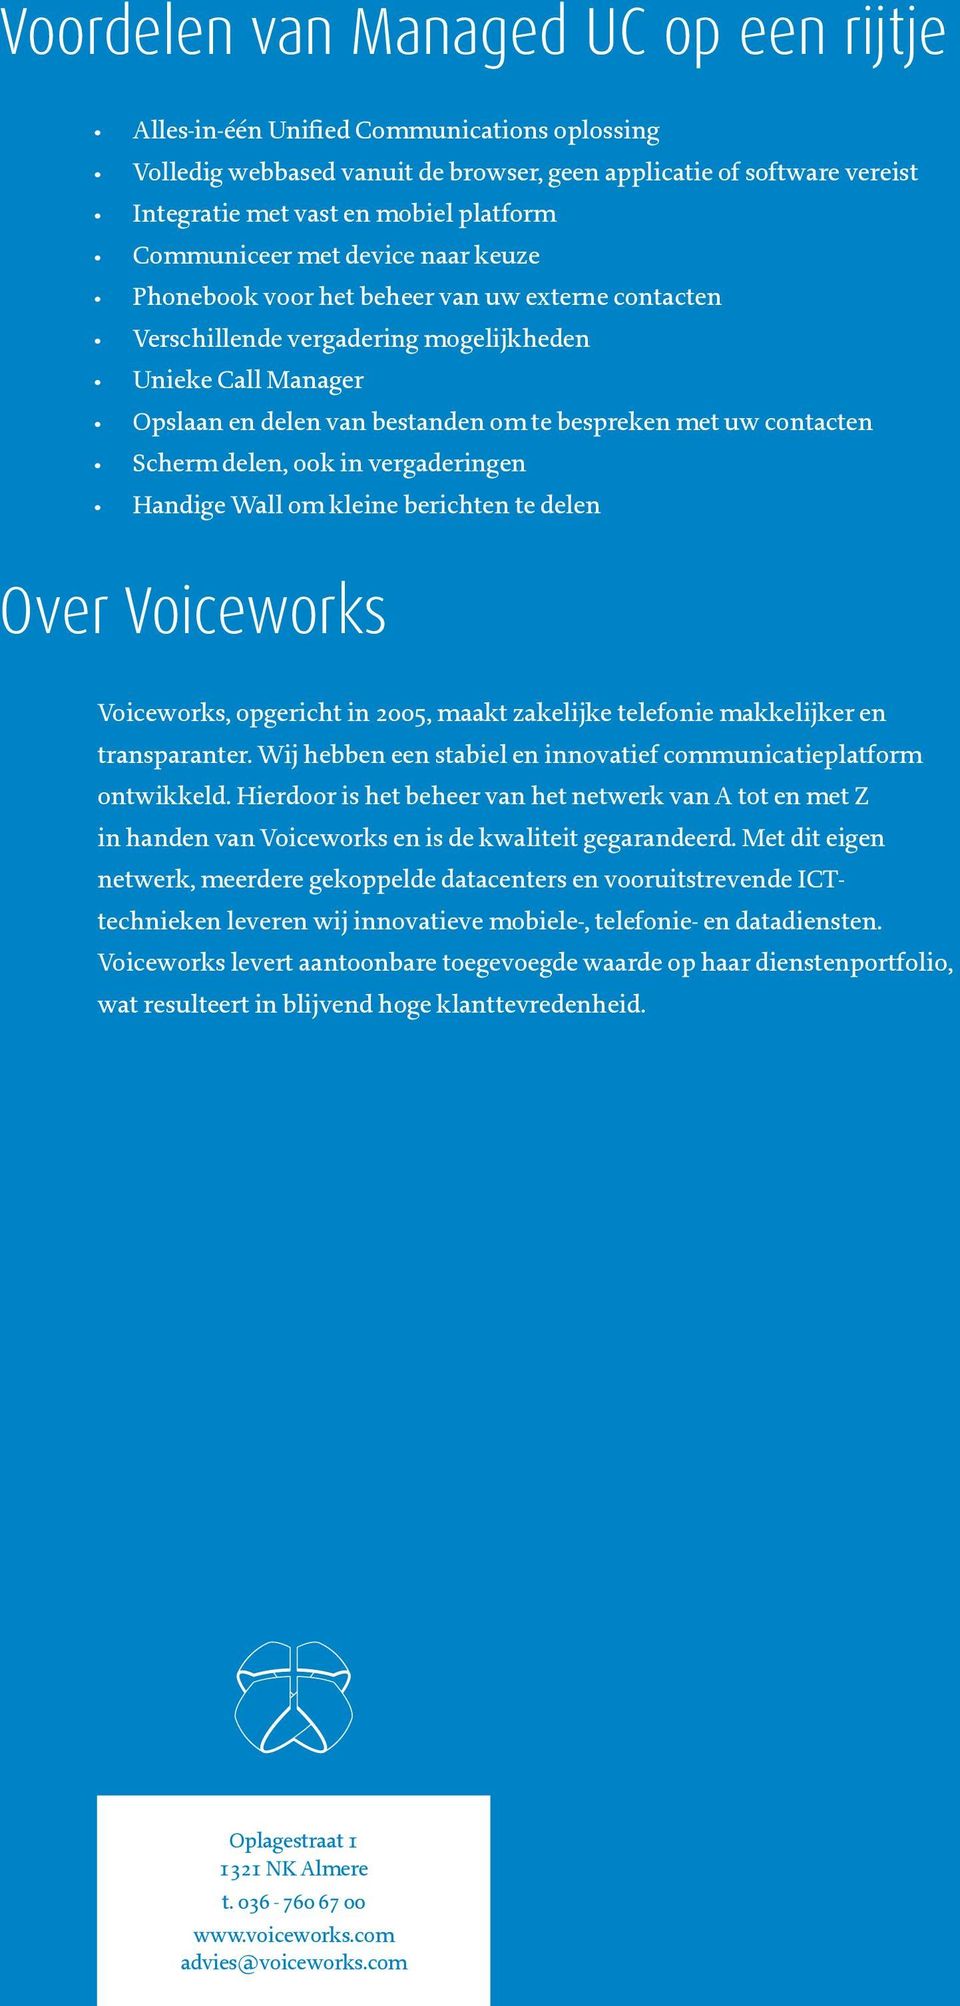 contacten Scherm delen, ook in vergaderingen Handige Wall om kleine berichten te delen Over Voiceworks Voiceworks, opgericht in 2005, maakt zakelijke telefonie makkelijker en transparanter.